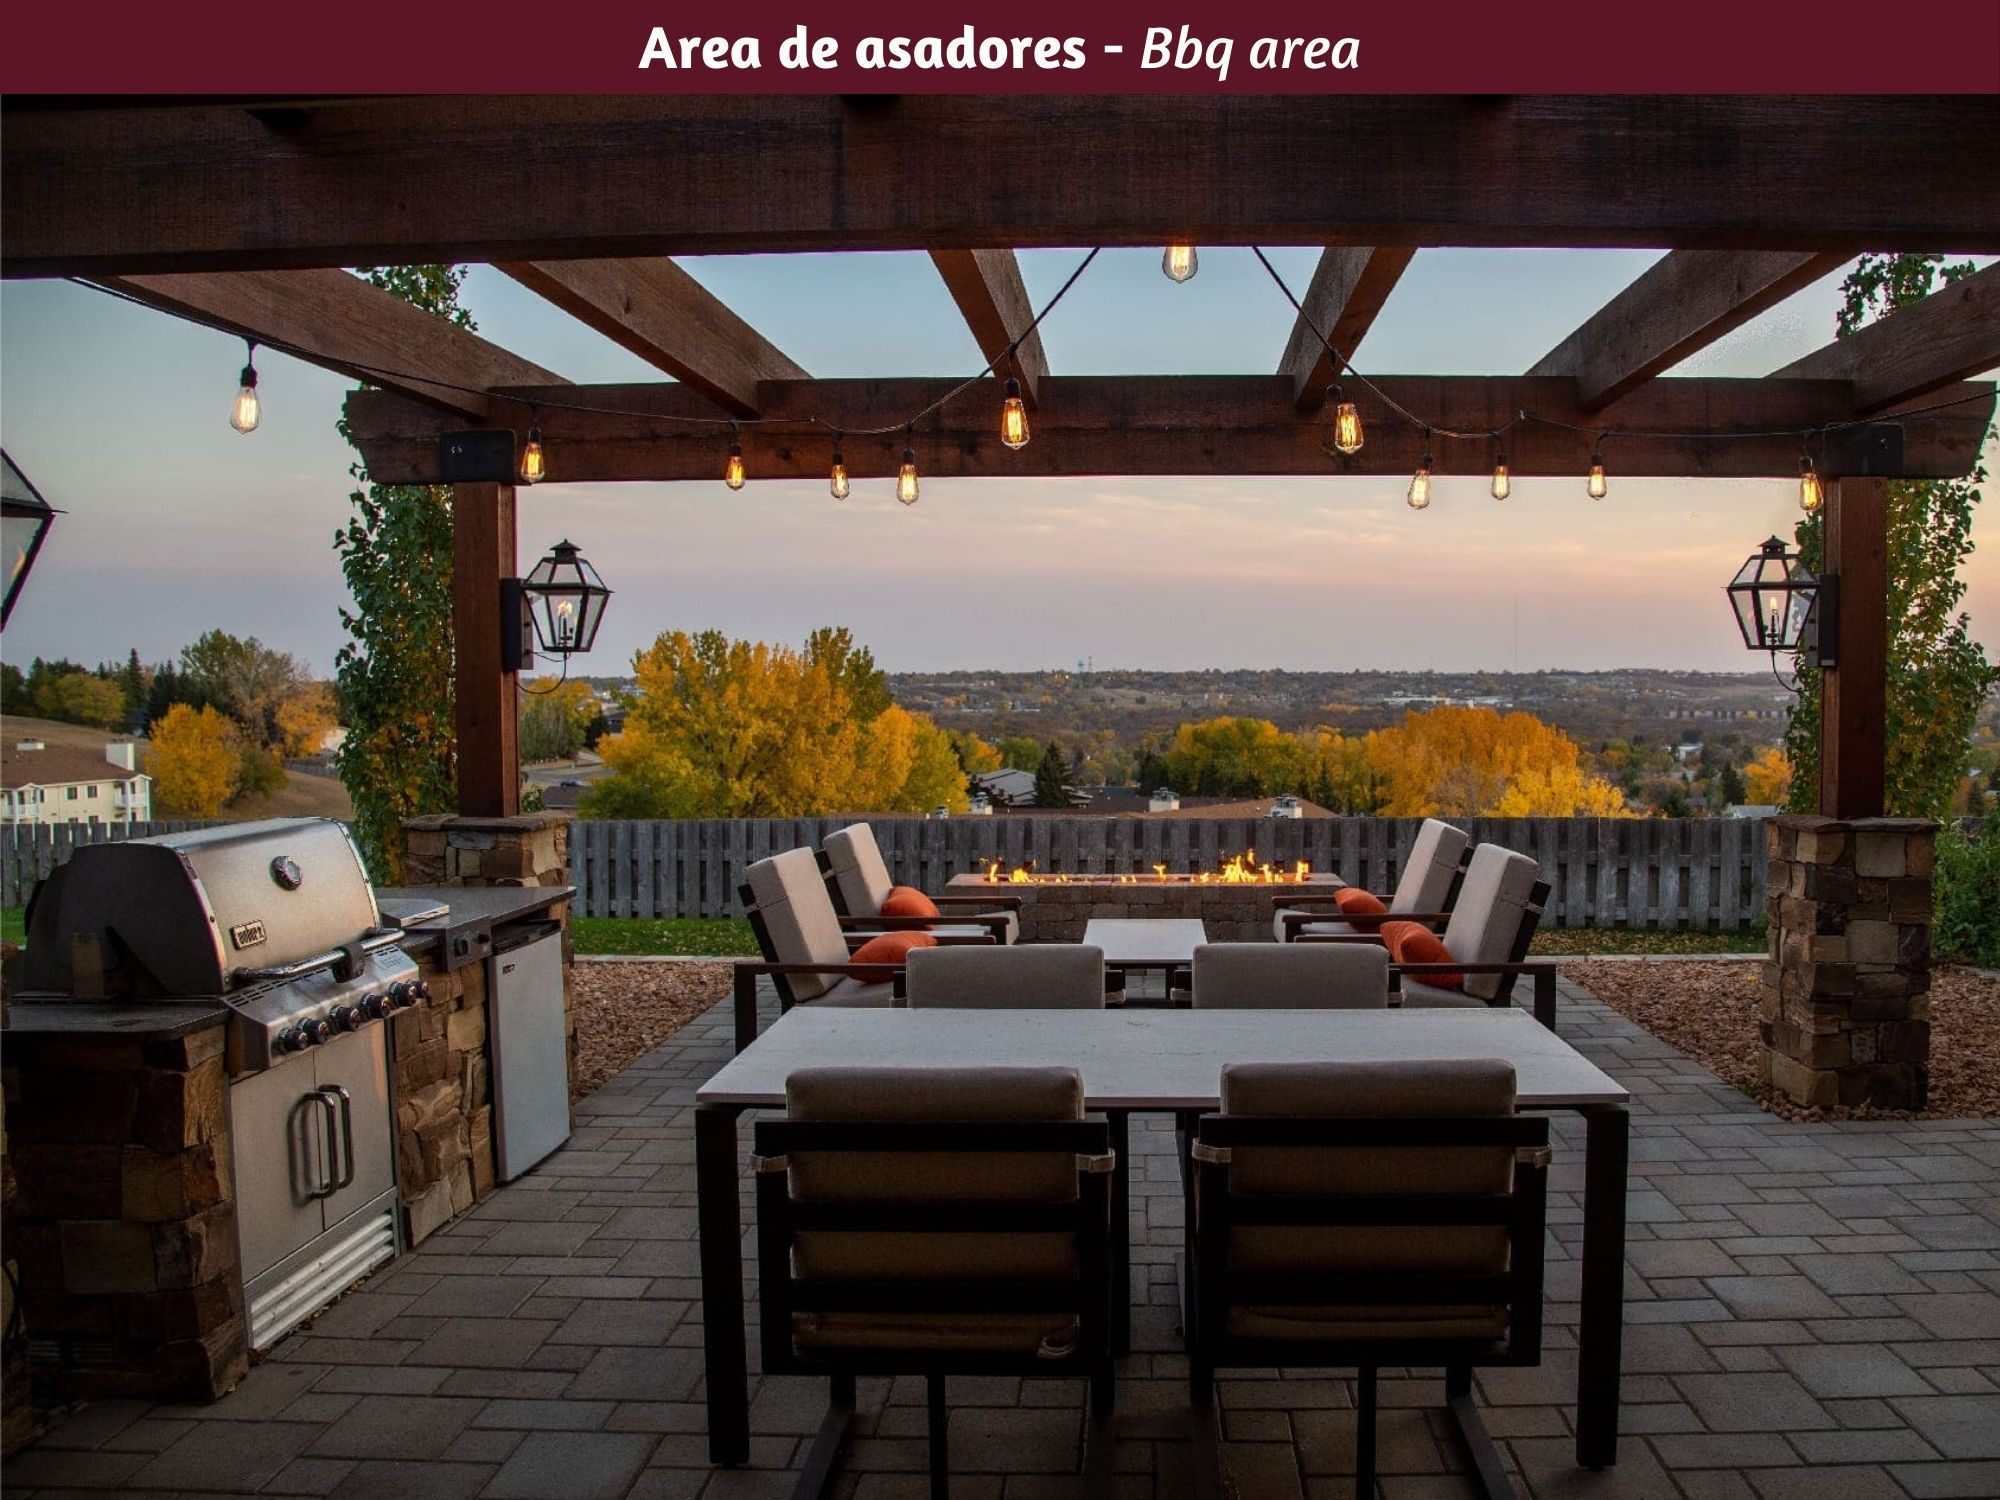 Lote de 437 m2 en residencial con casa club, venta San Miguel de Allende.